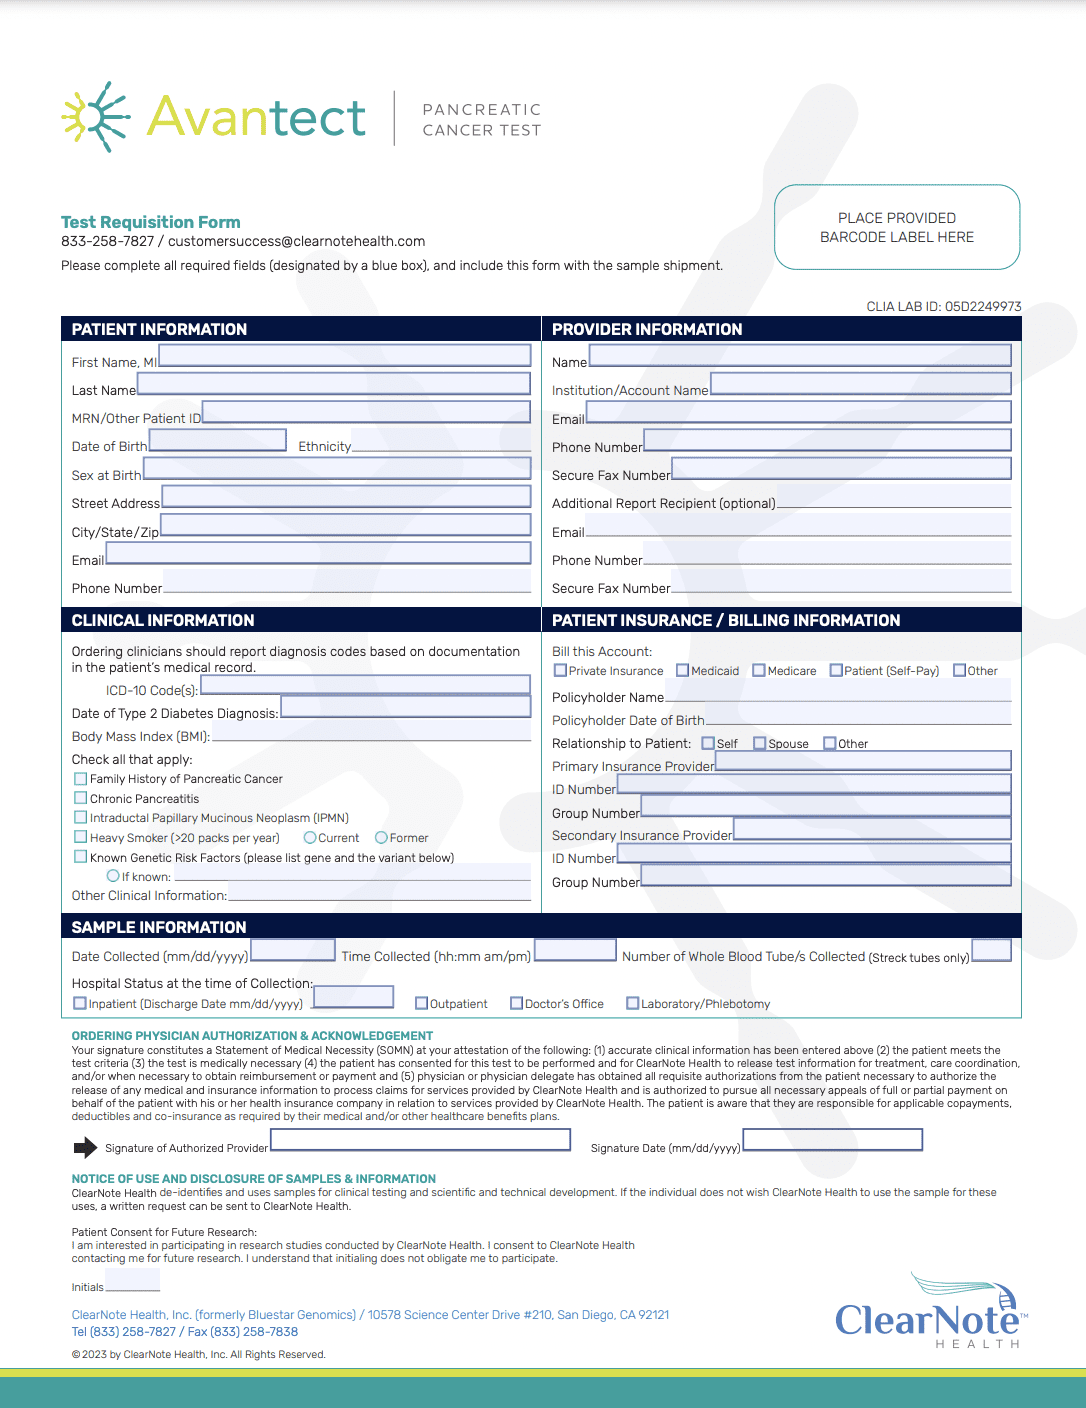 Avantect test requisition form